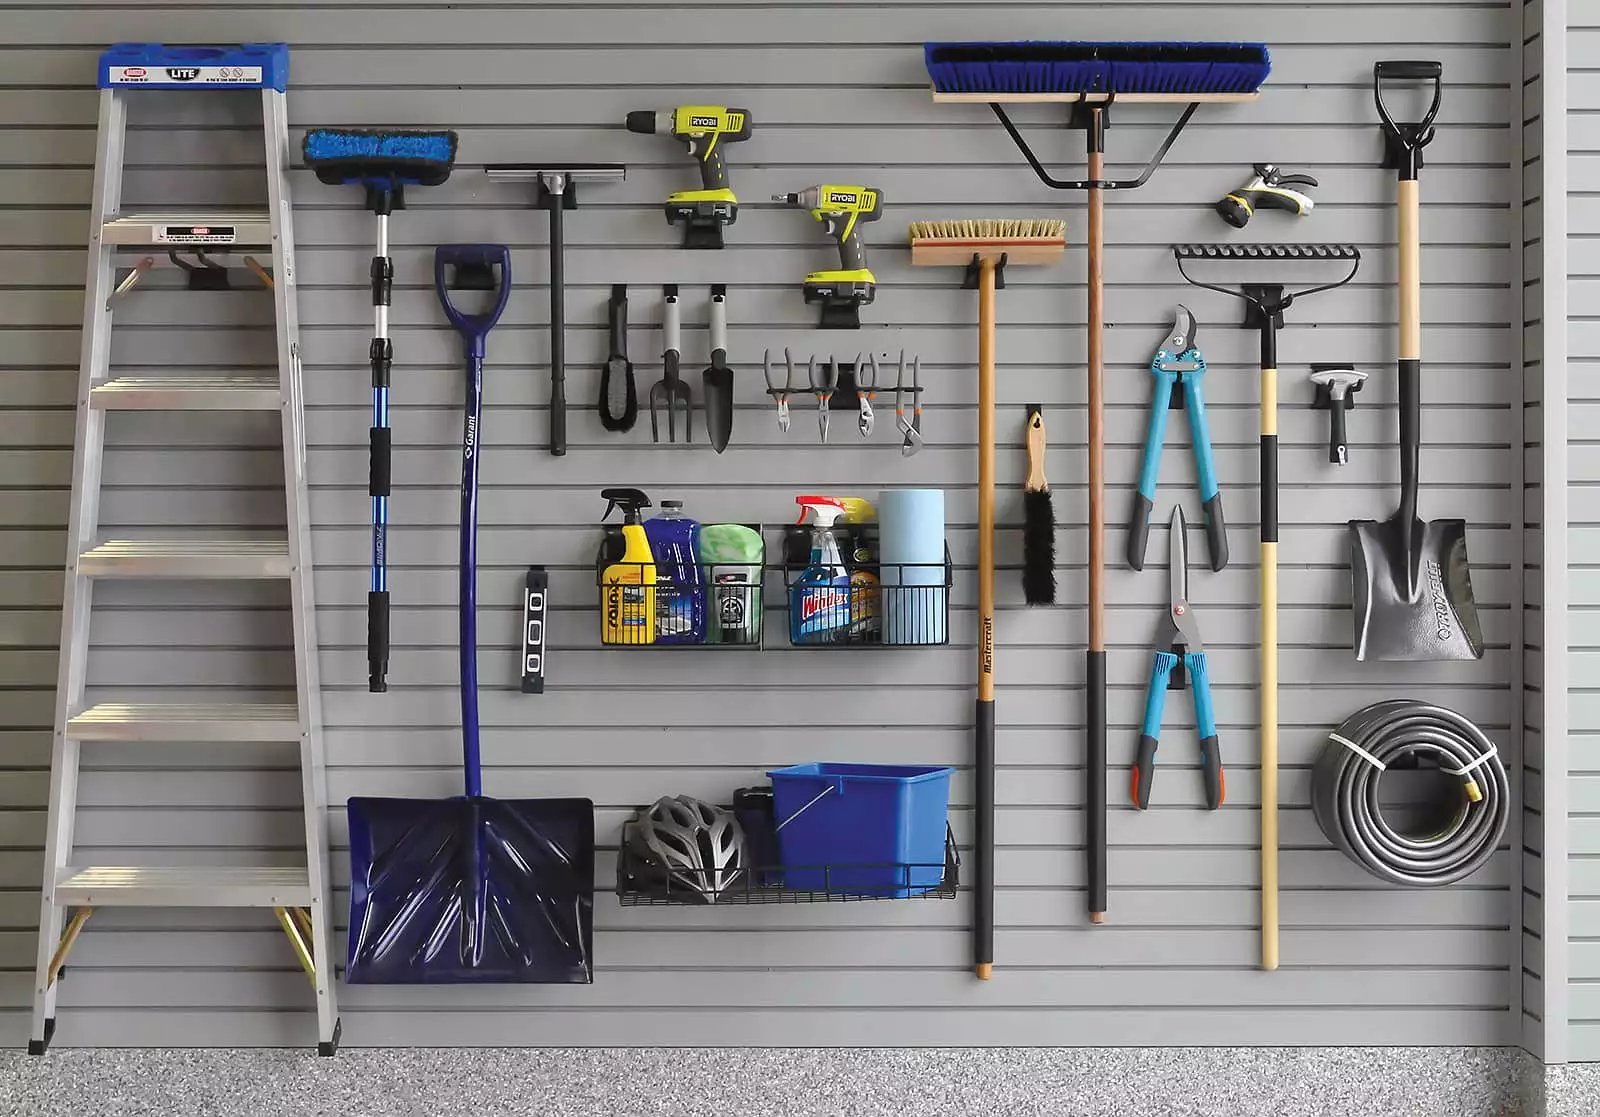 xgarage-slatwall-wall-storage-ladders-shovels-brooms.jpg.pagespeed.ic.WiZNfCMk-J